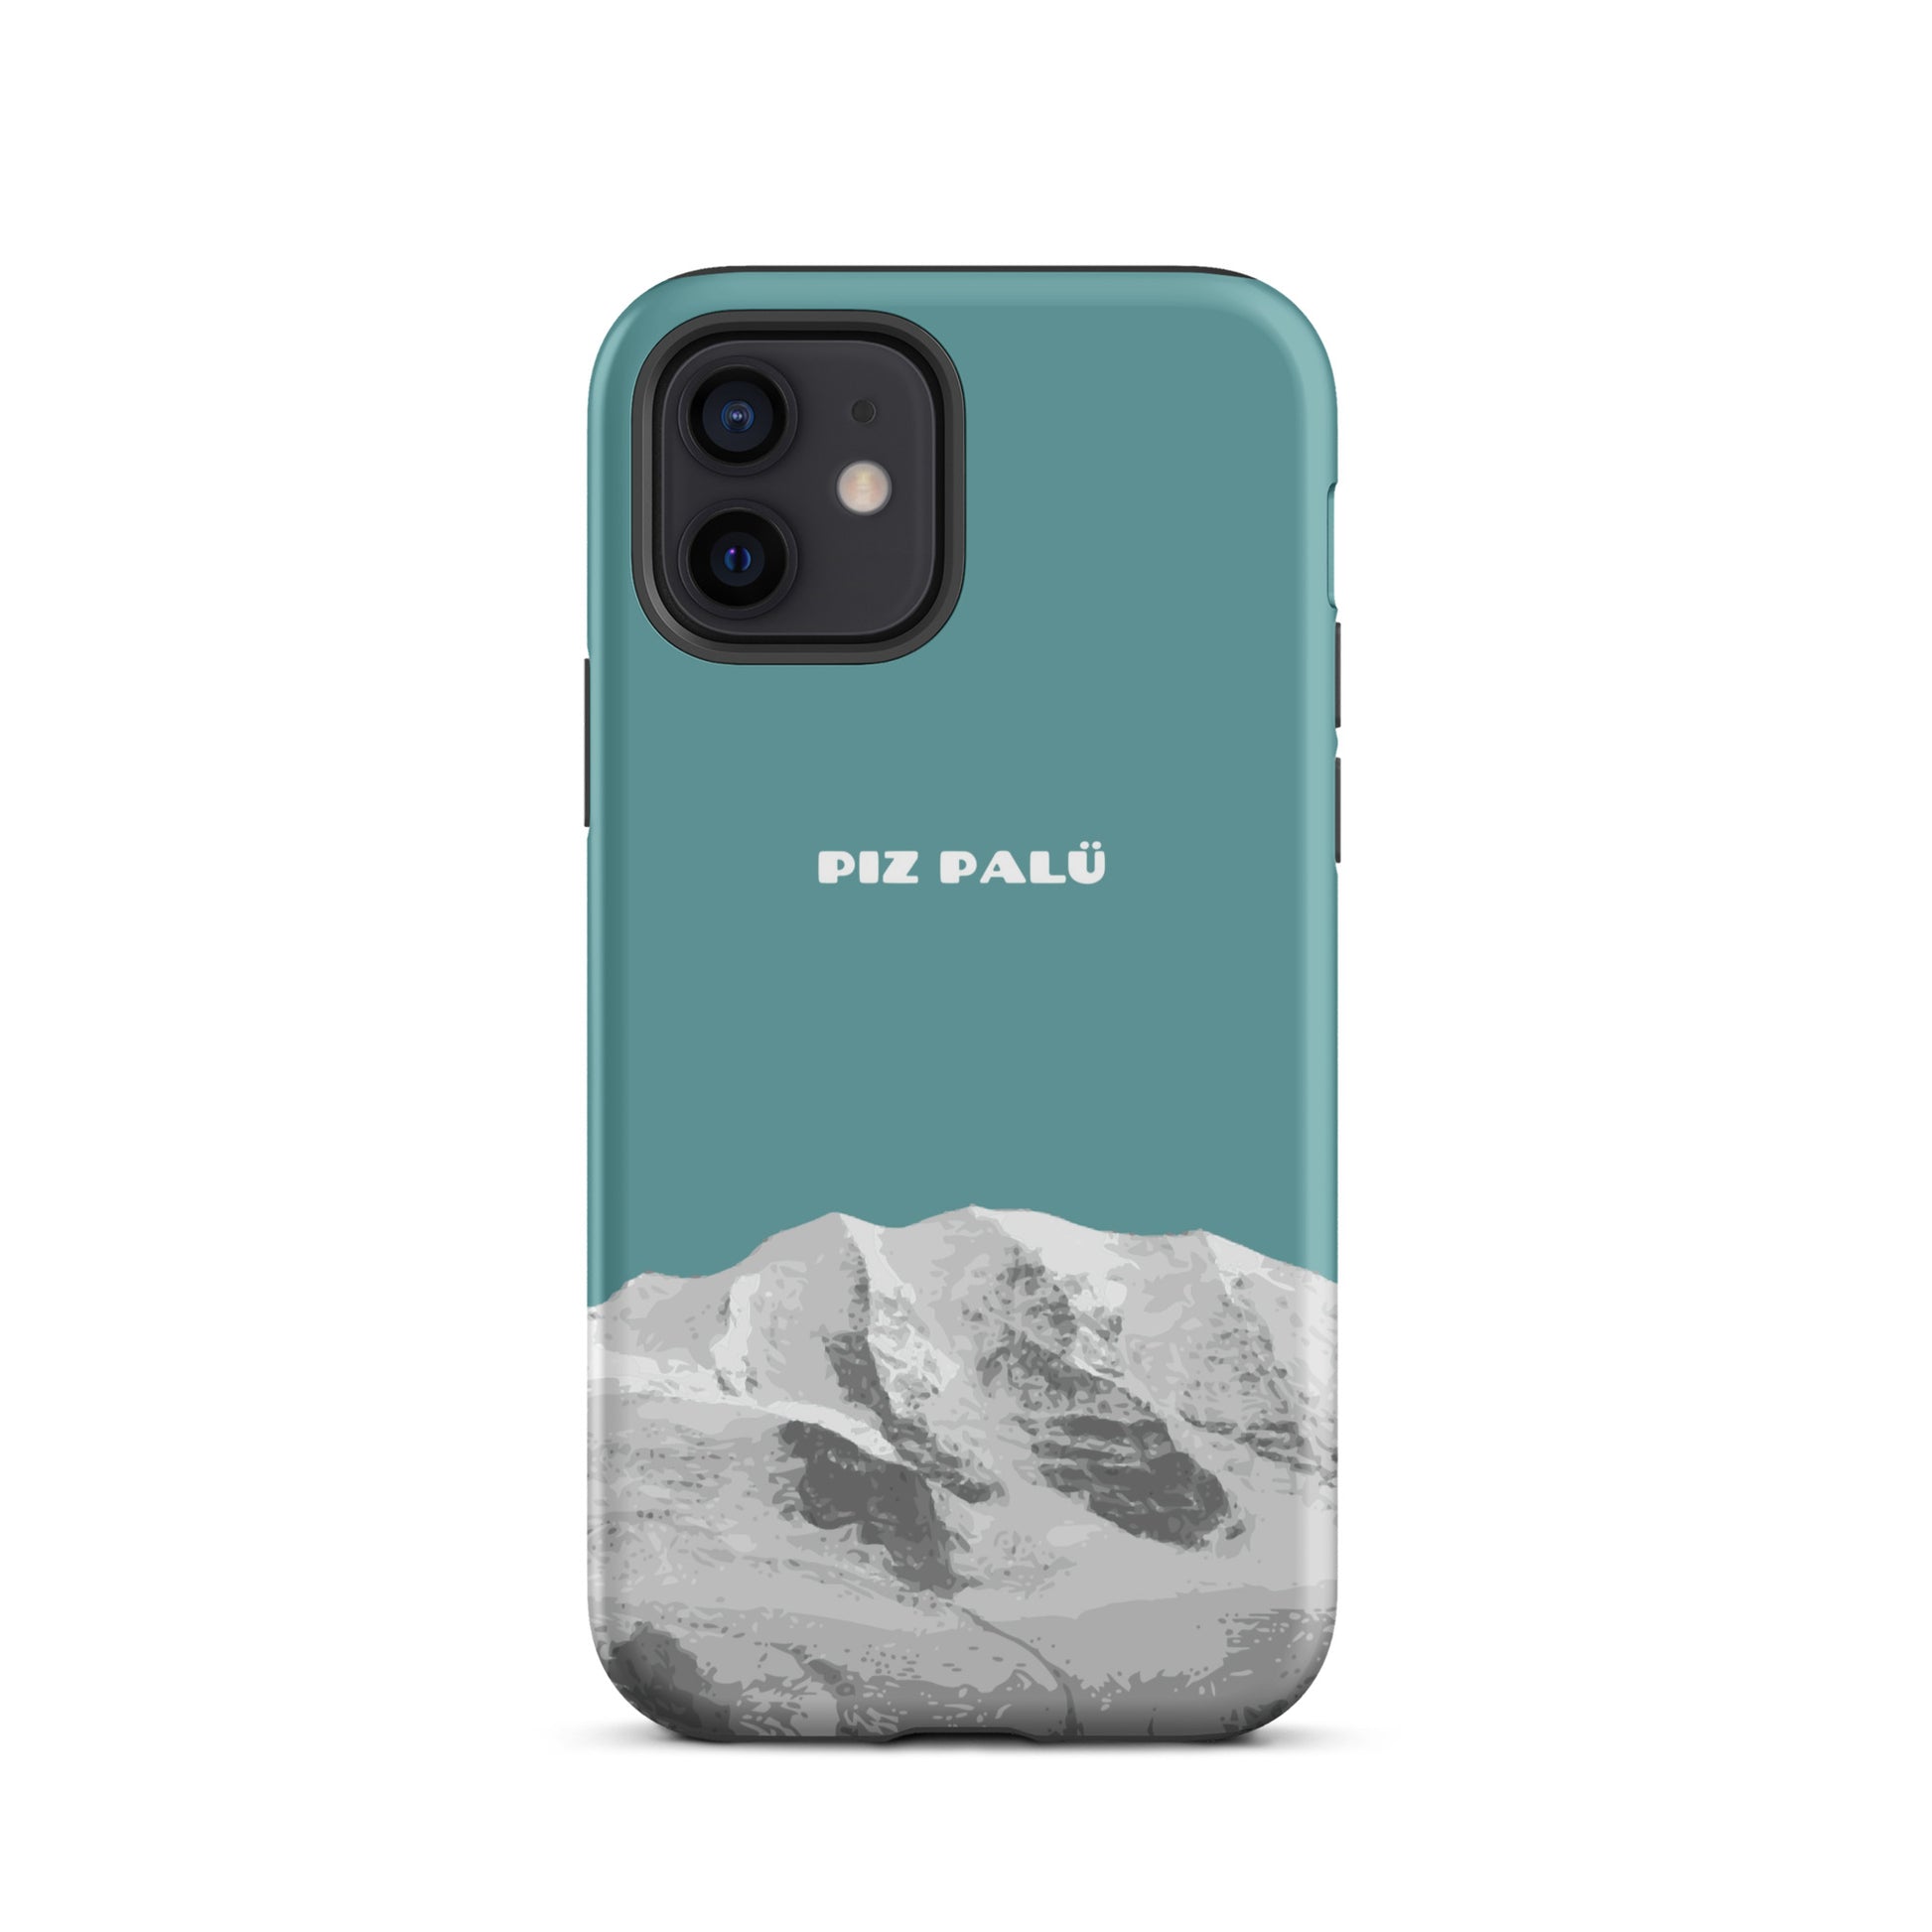 Hülle für das iPhone 12 von Apple in der Farbe Kadettenblau, dass den Piz Palü in Graubünden zeigt.